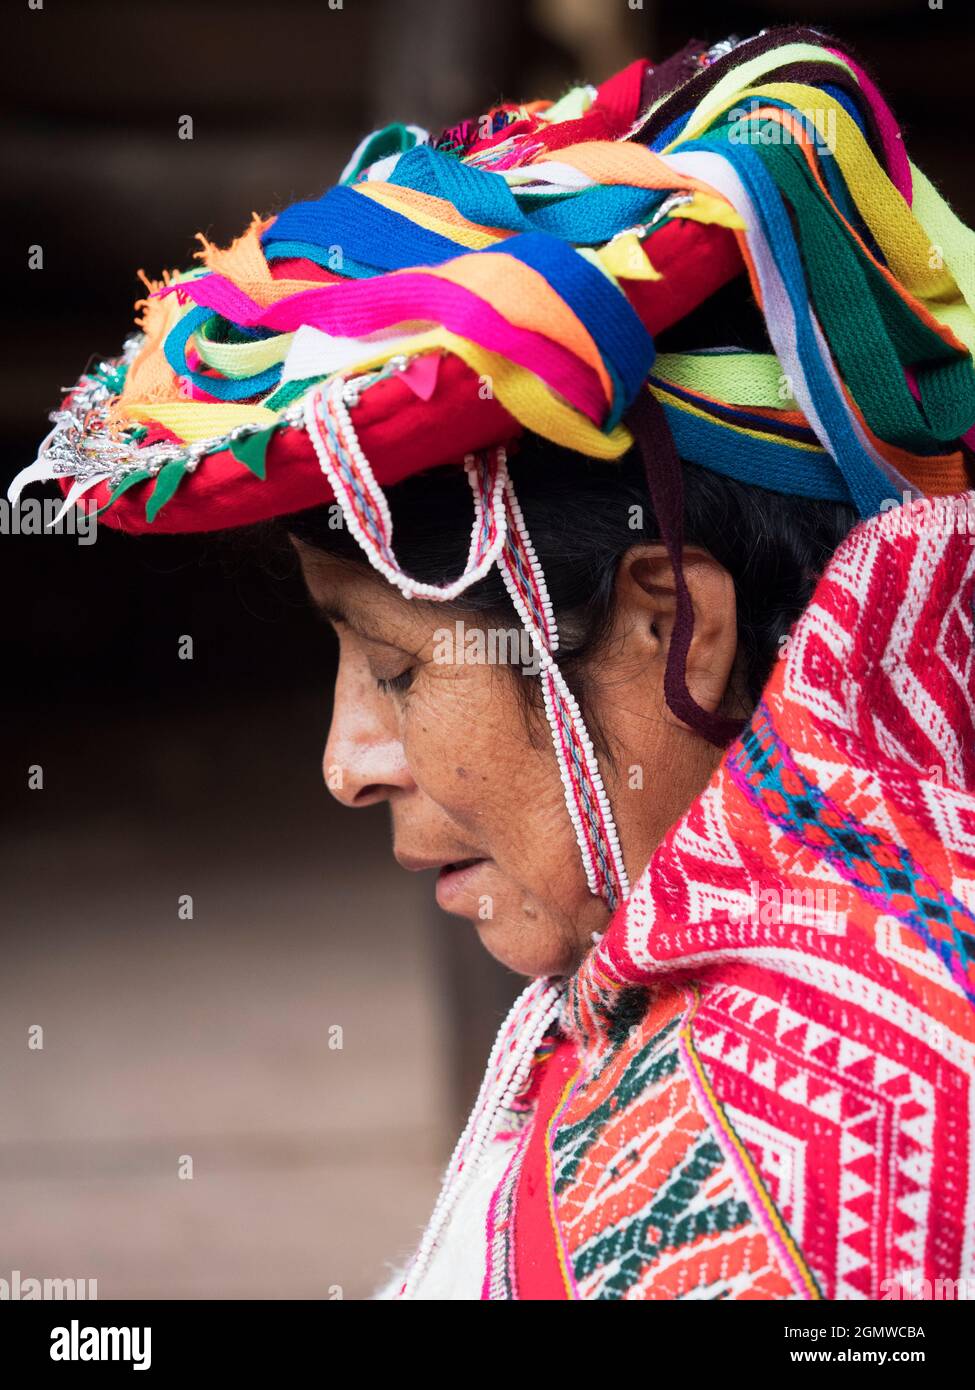 Awanakancha, Perú - 11 de mayo de 2018; una mujer en tiro Retrato de un tejedor en Awanakancha, con colorido traje tribal tradicional. Foto de stock